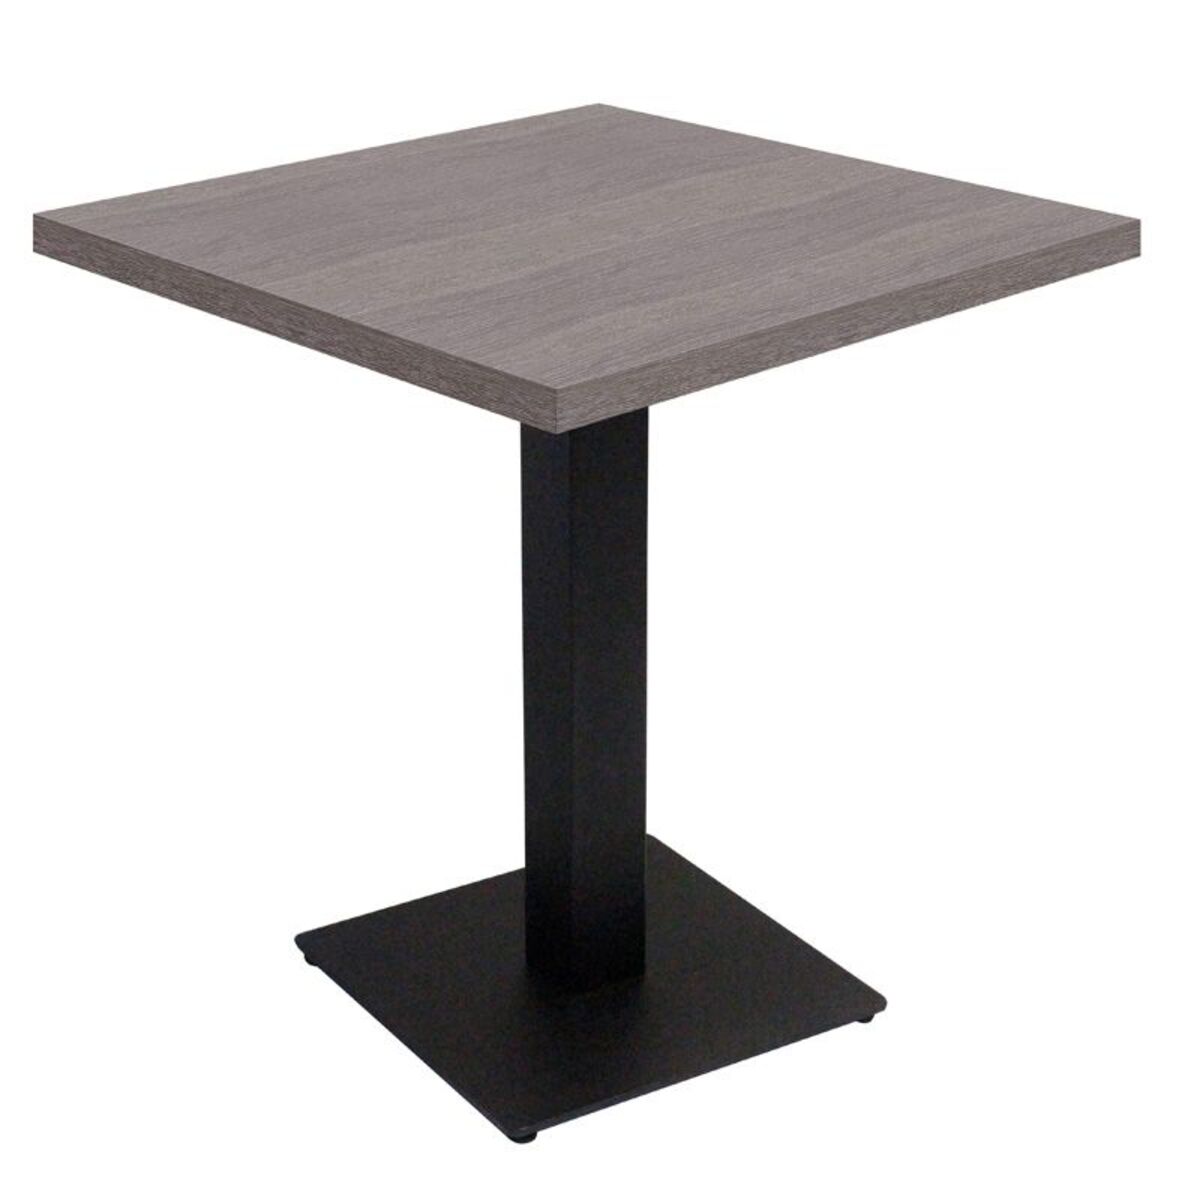 Table intérieure pied noir base carrée & plateau tavola grisé 60x60 cm